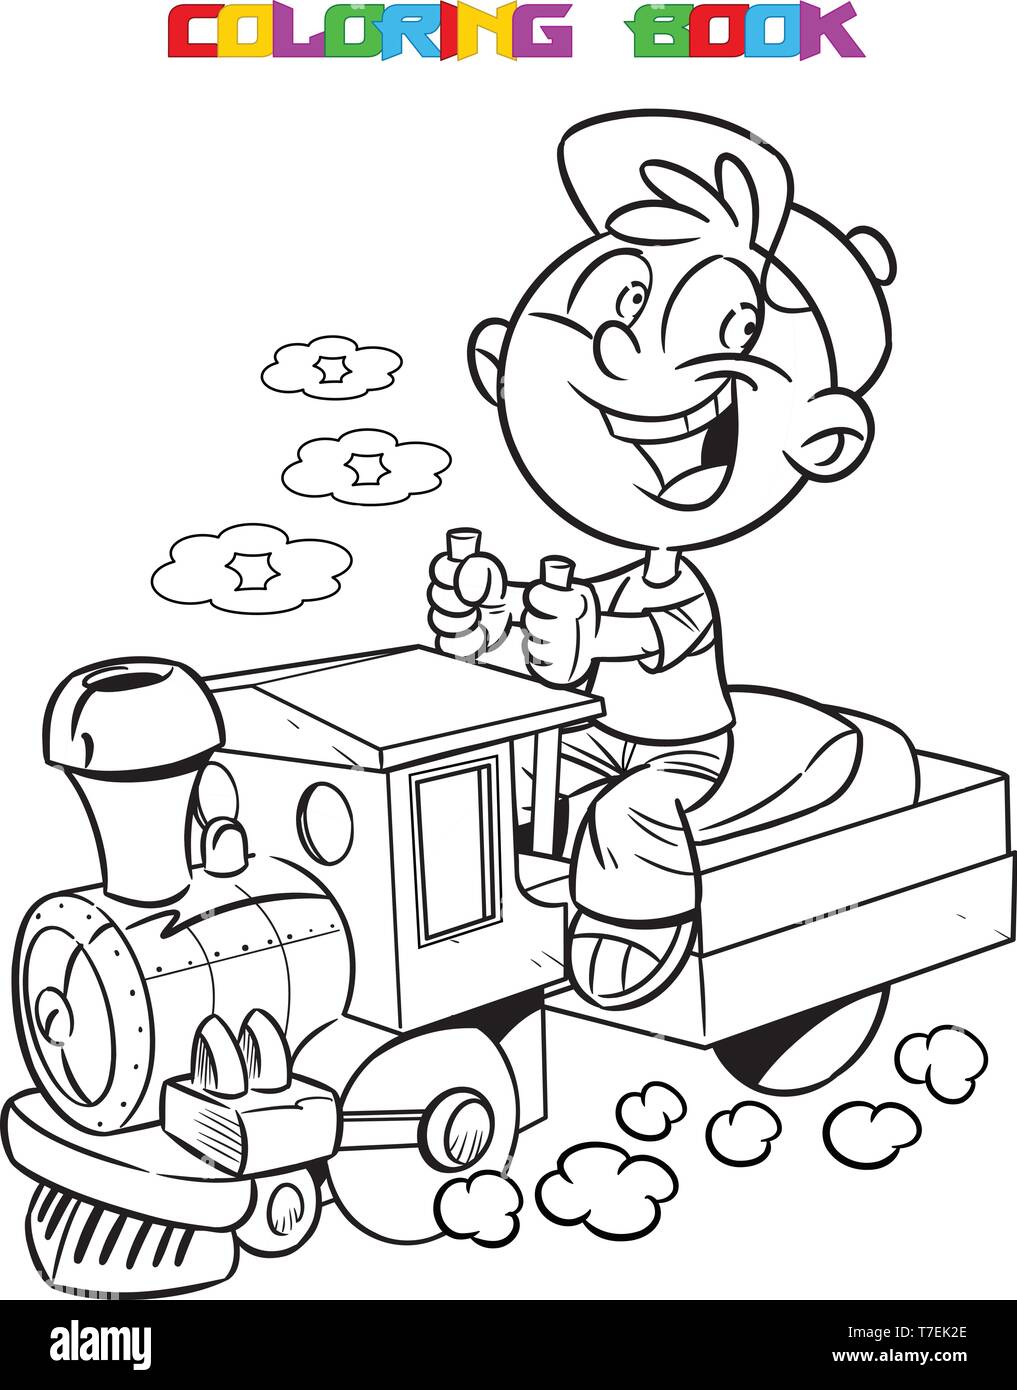 L'illustration montre un garçon qui joue durs un jouet locomotive. Un contour noir est fait pour un livre de coloriage. Illustration de Vecteur